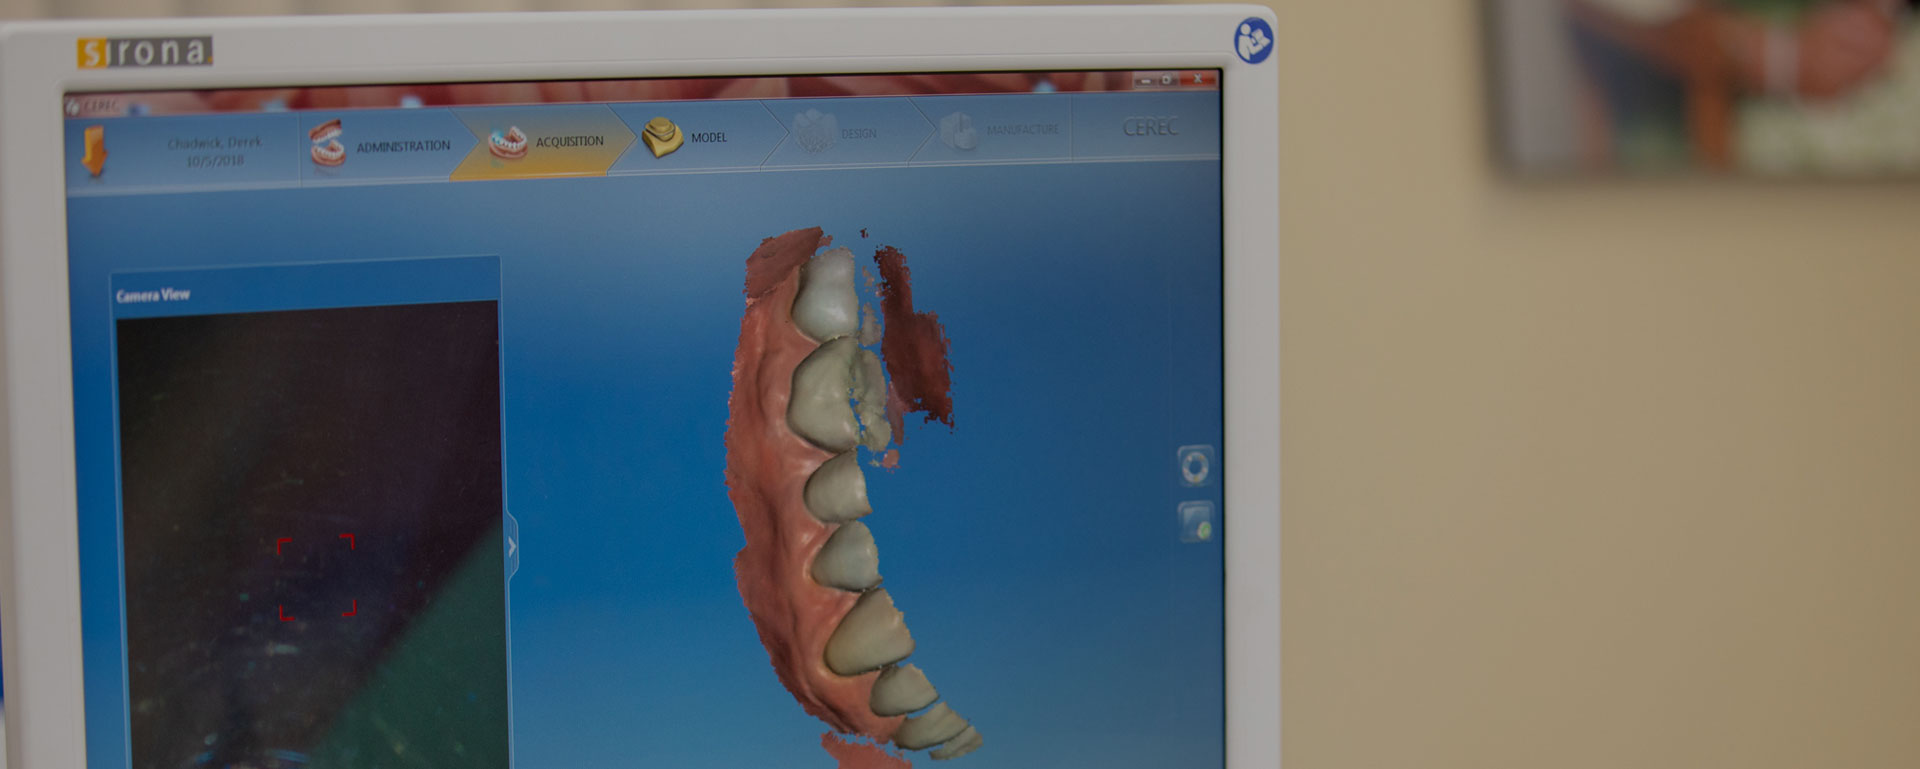 Digital dental x-ray